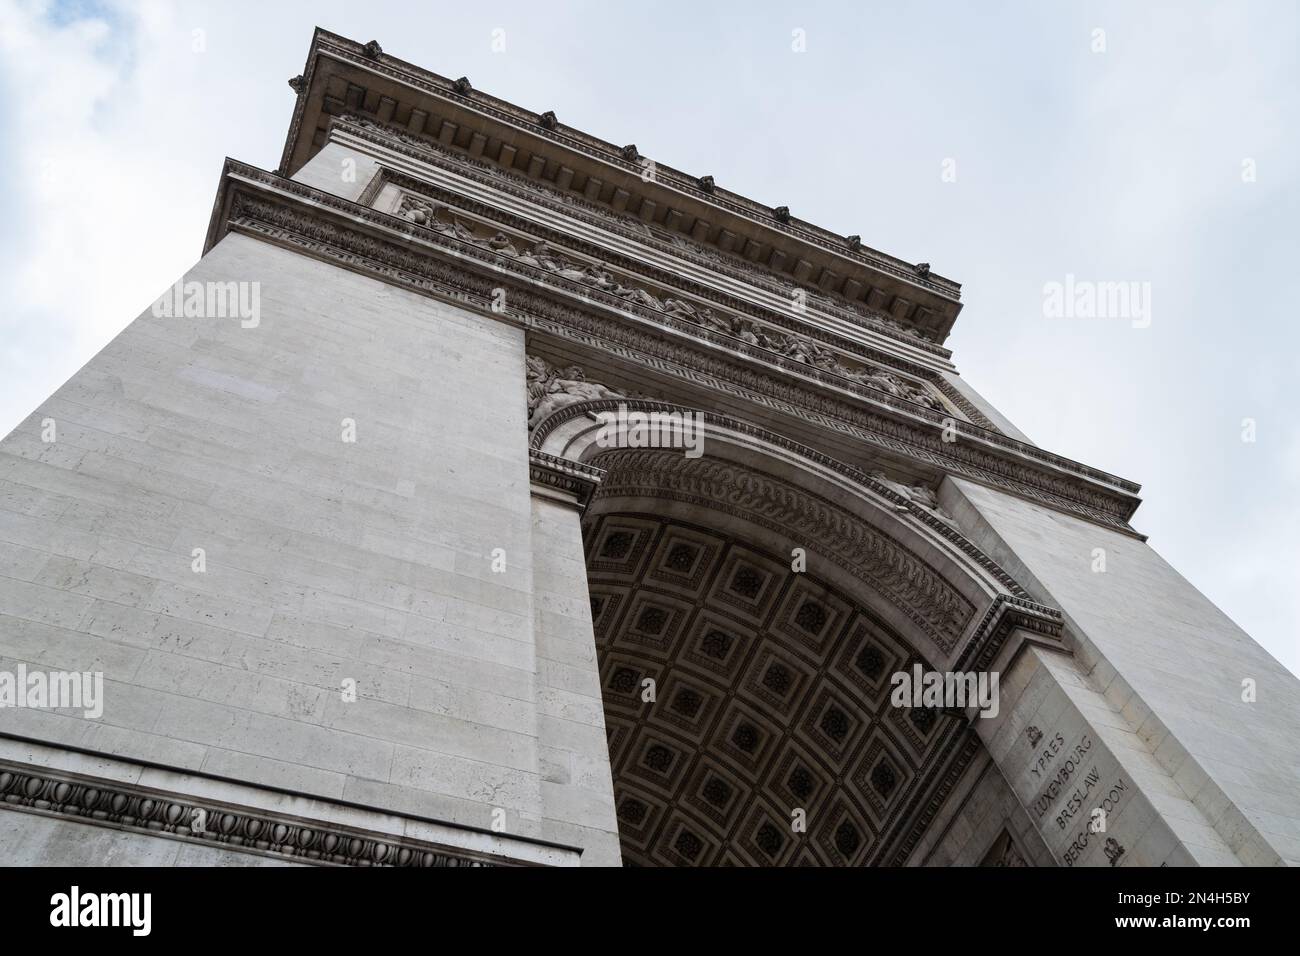 Arc de Triomphe à Paris, visite de Paris, Tourisme à Paris. Grands monuments européens, style Haussmann. Place Charles de Gaulle place de l'étoile. Banque D'Images